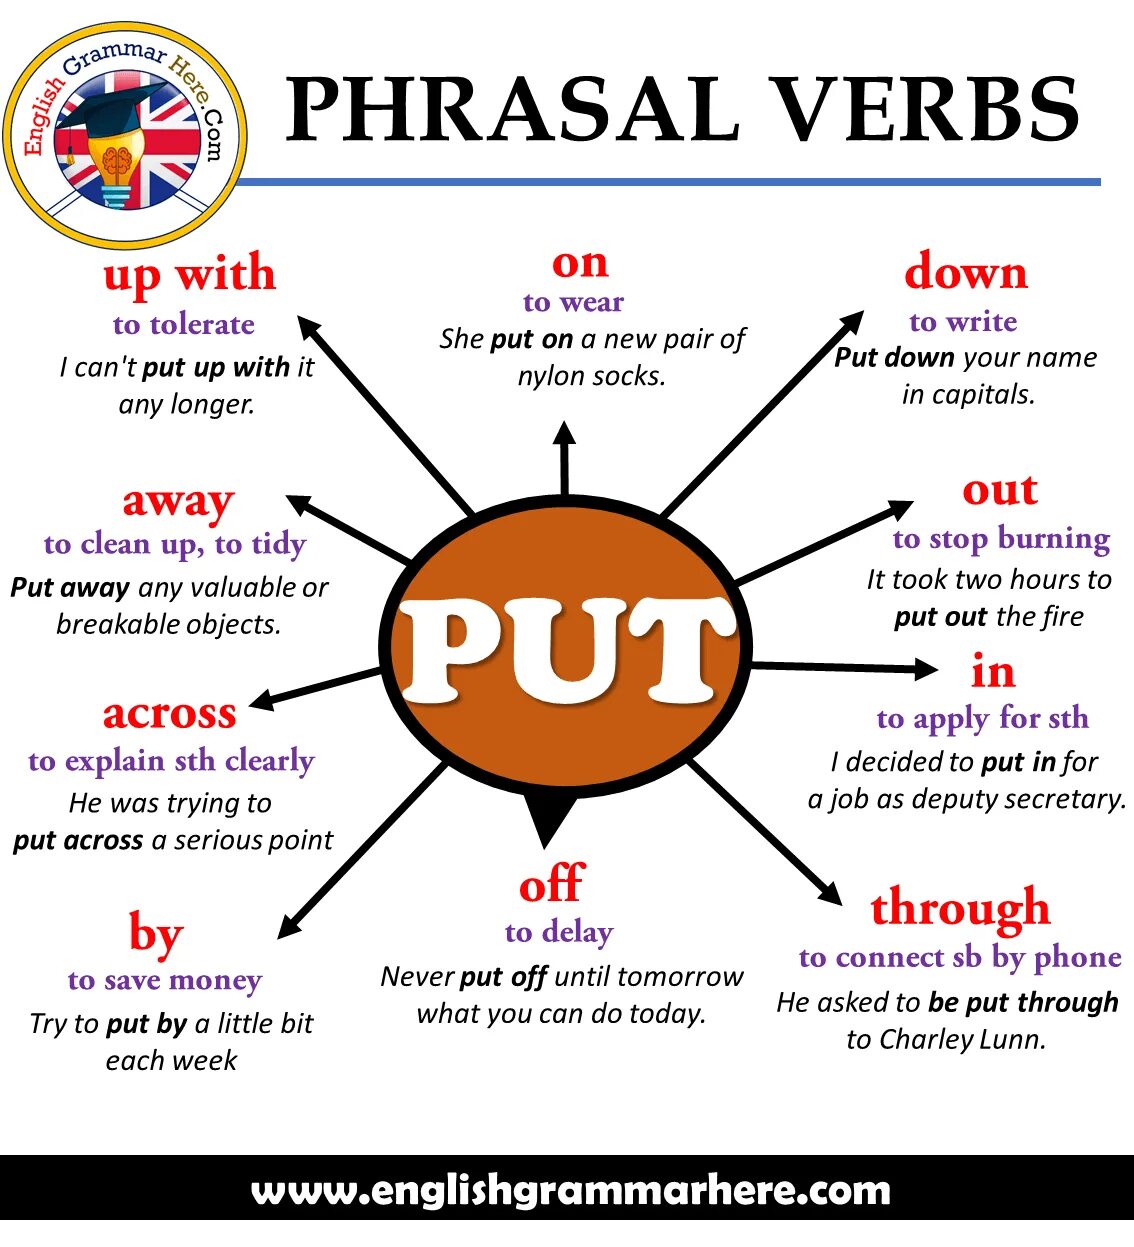 Connect перевод с английского. Фразовые глаголы в английском put. Phrasal verbs таблица put. Английские фразовые глаголы. Phrasal verbs в английском языке.